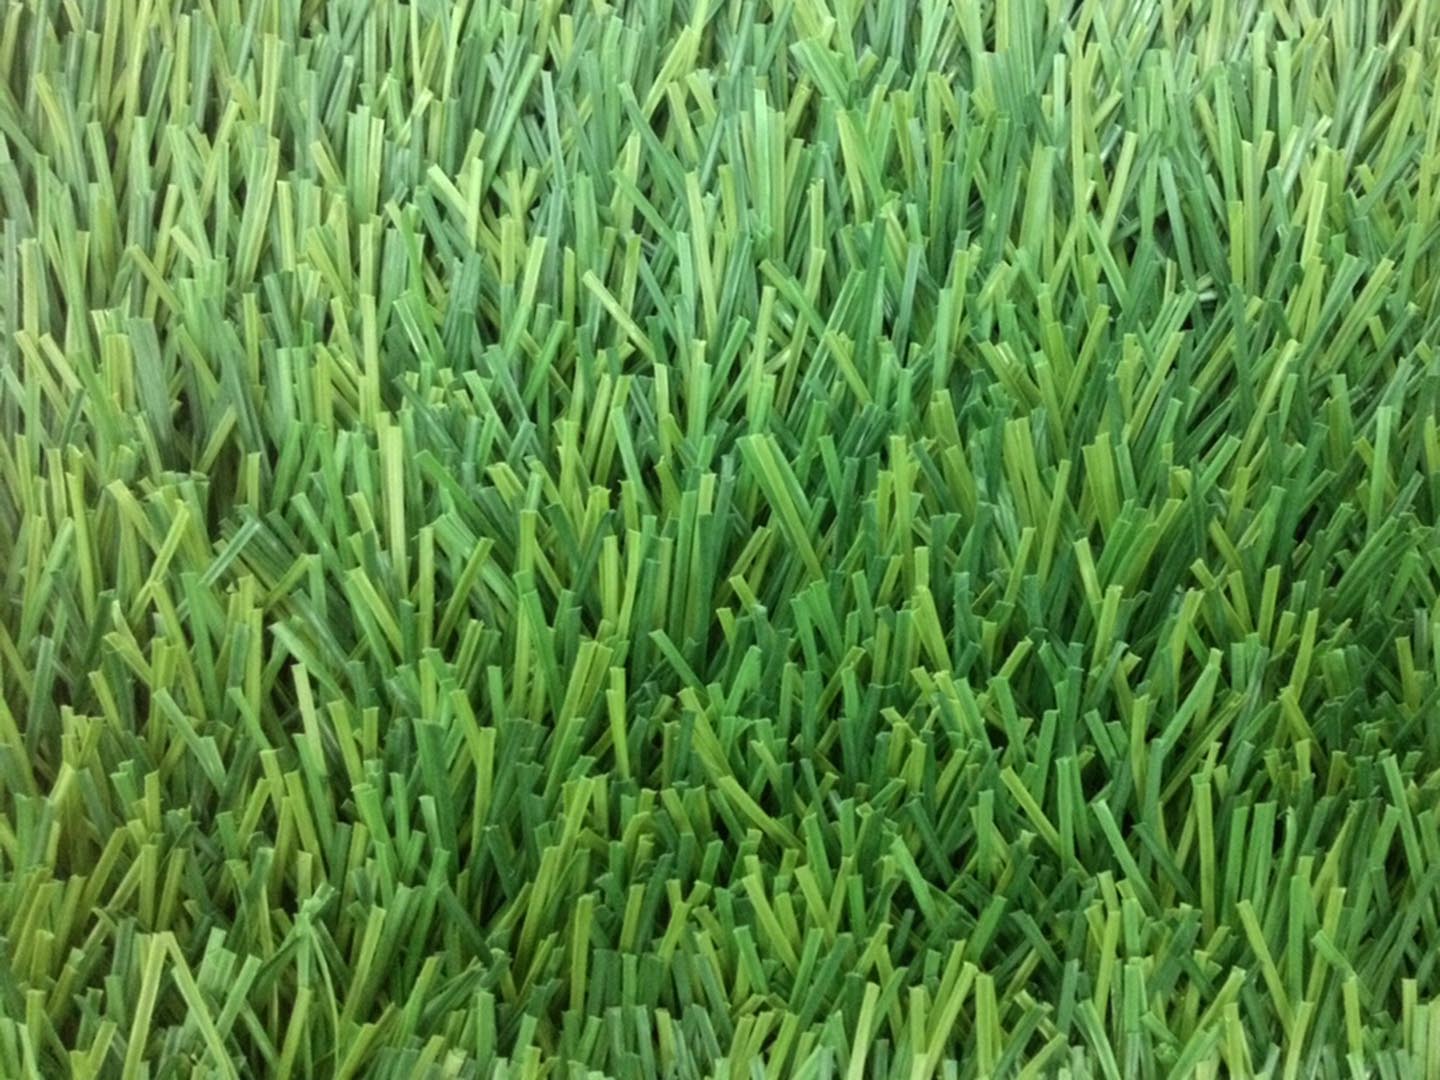 หญ้าเทียม อีซี่กราส สปอร์ต เอสซีจี รุ่นสั่งตัด ความยาวหญ้า 6 ซม. สี เอเนอจี กรีน